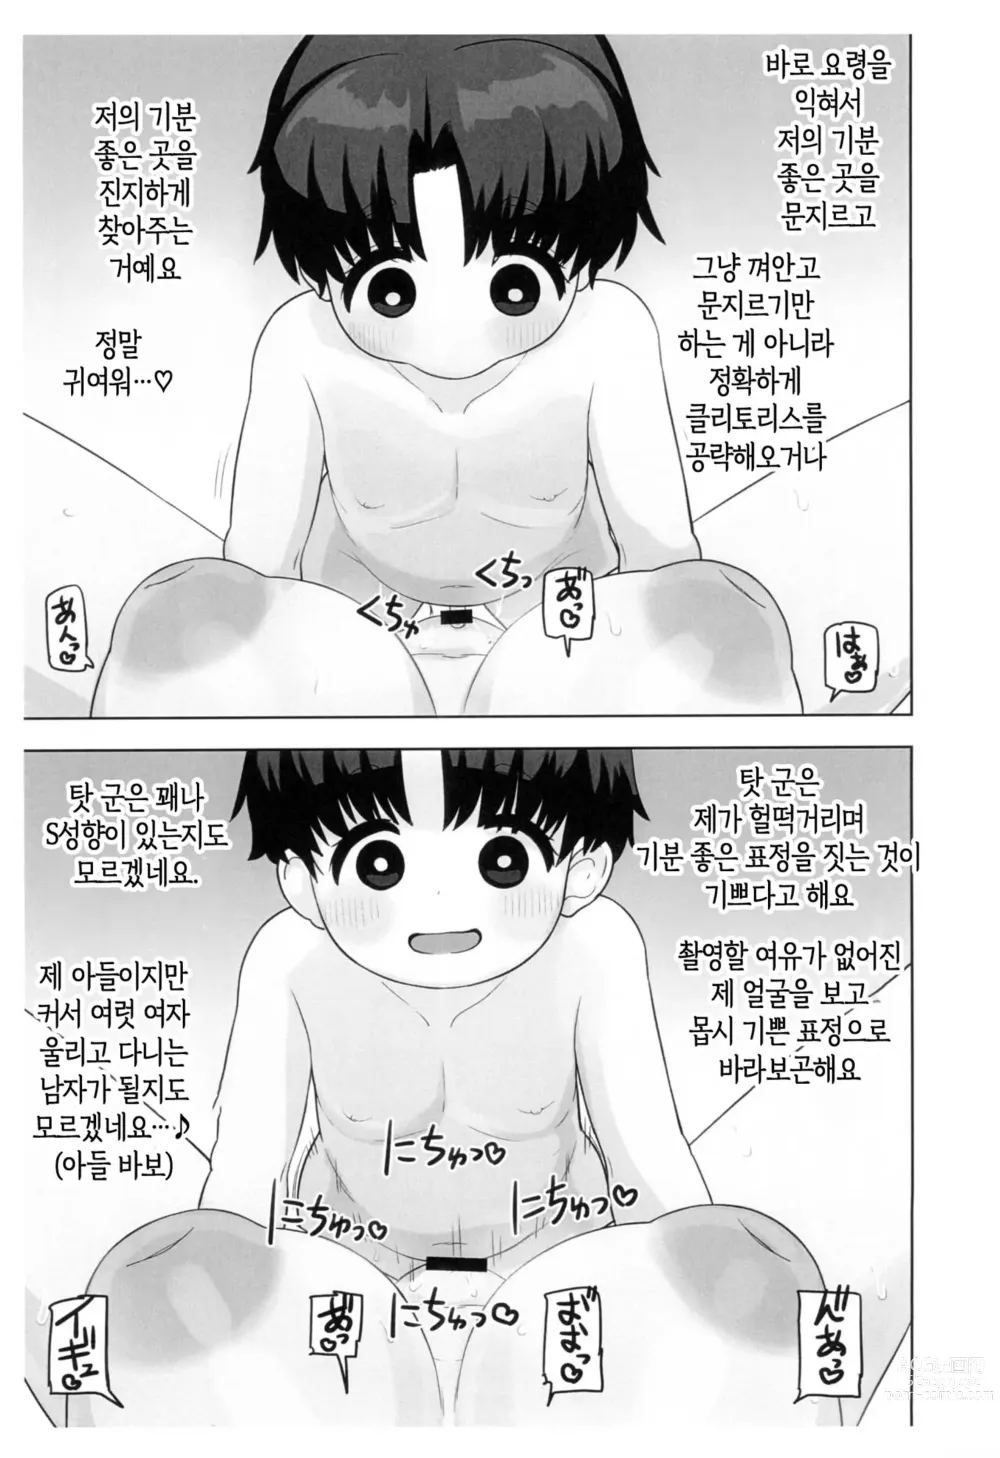 Page 10 of doujinshi 체험수기류 소설 에로동인 오네쇼타 동인작가 엄마의 비밀